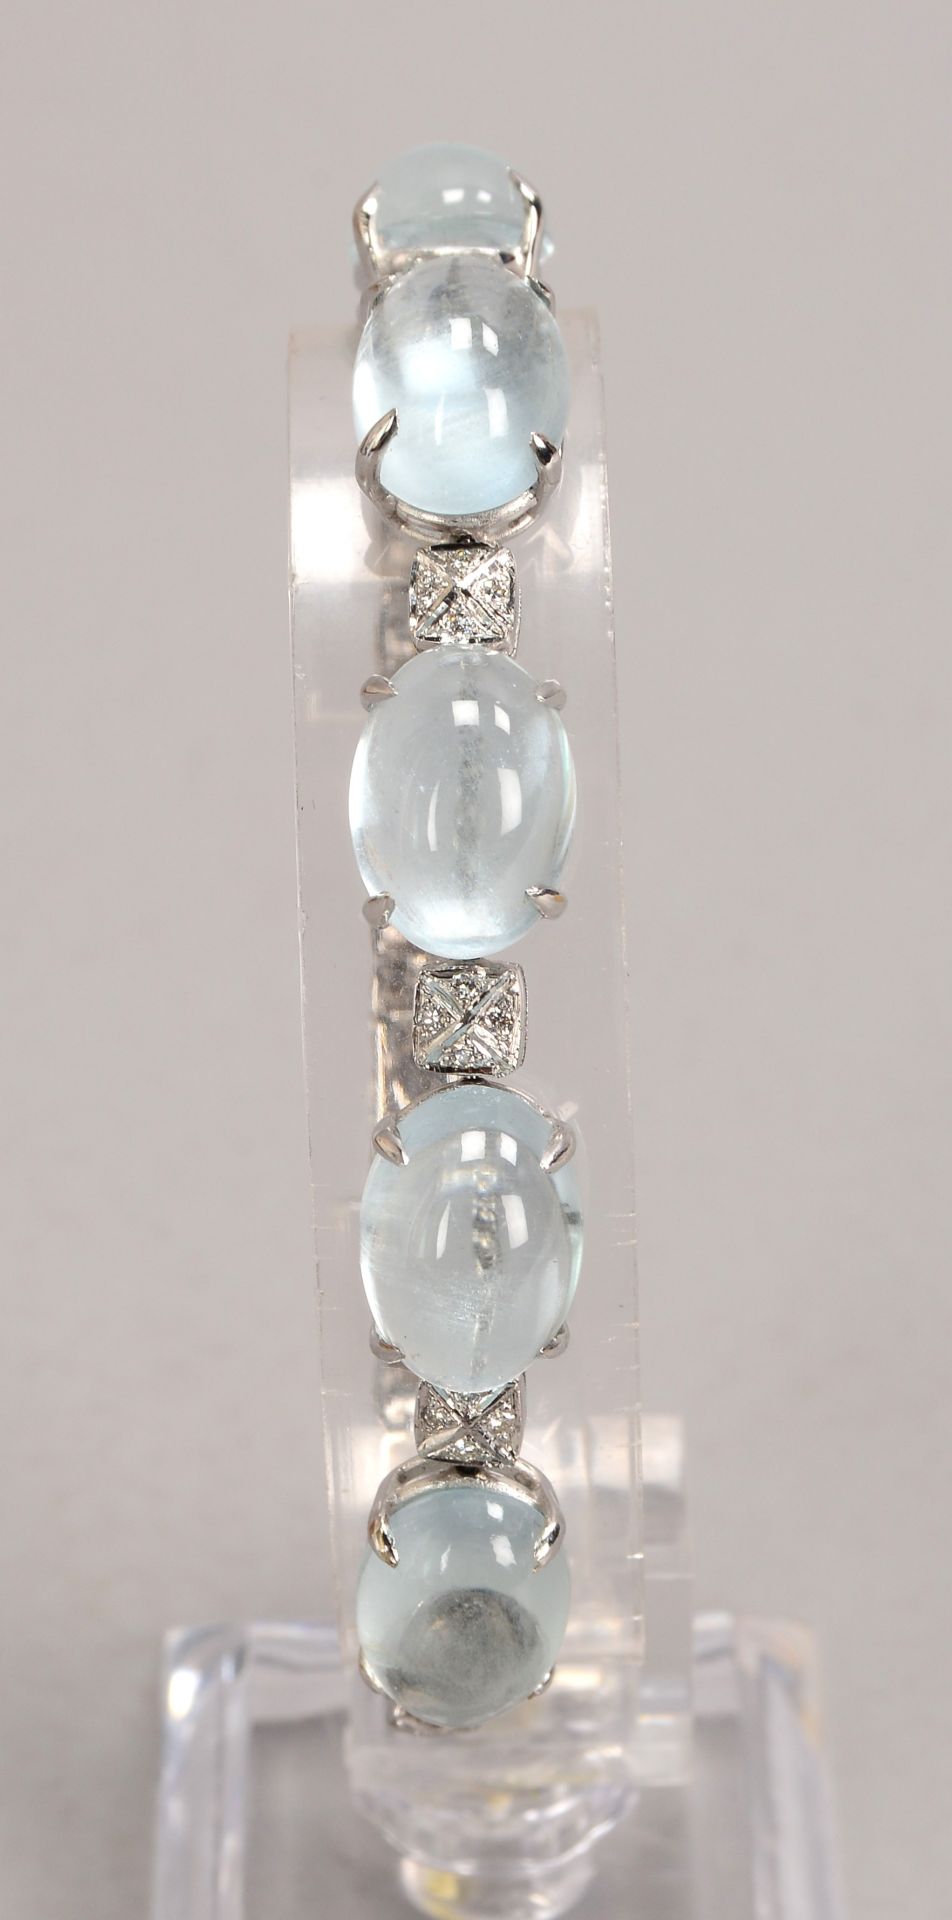 Armband, 750 WG (gest.), mit 5-fachem Aquamarinbesatz, Steine im Cabochonschliff, sowie mit Diamante - Image 2 of 2